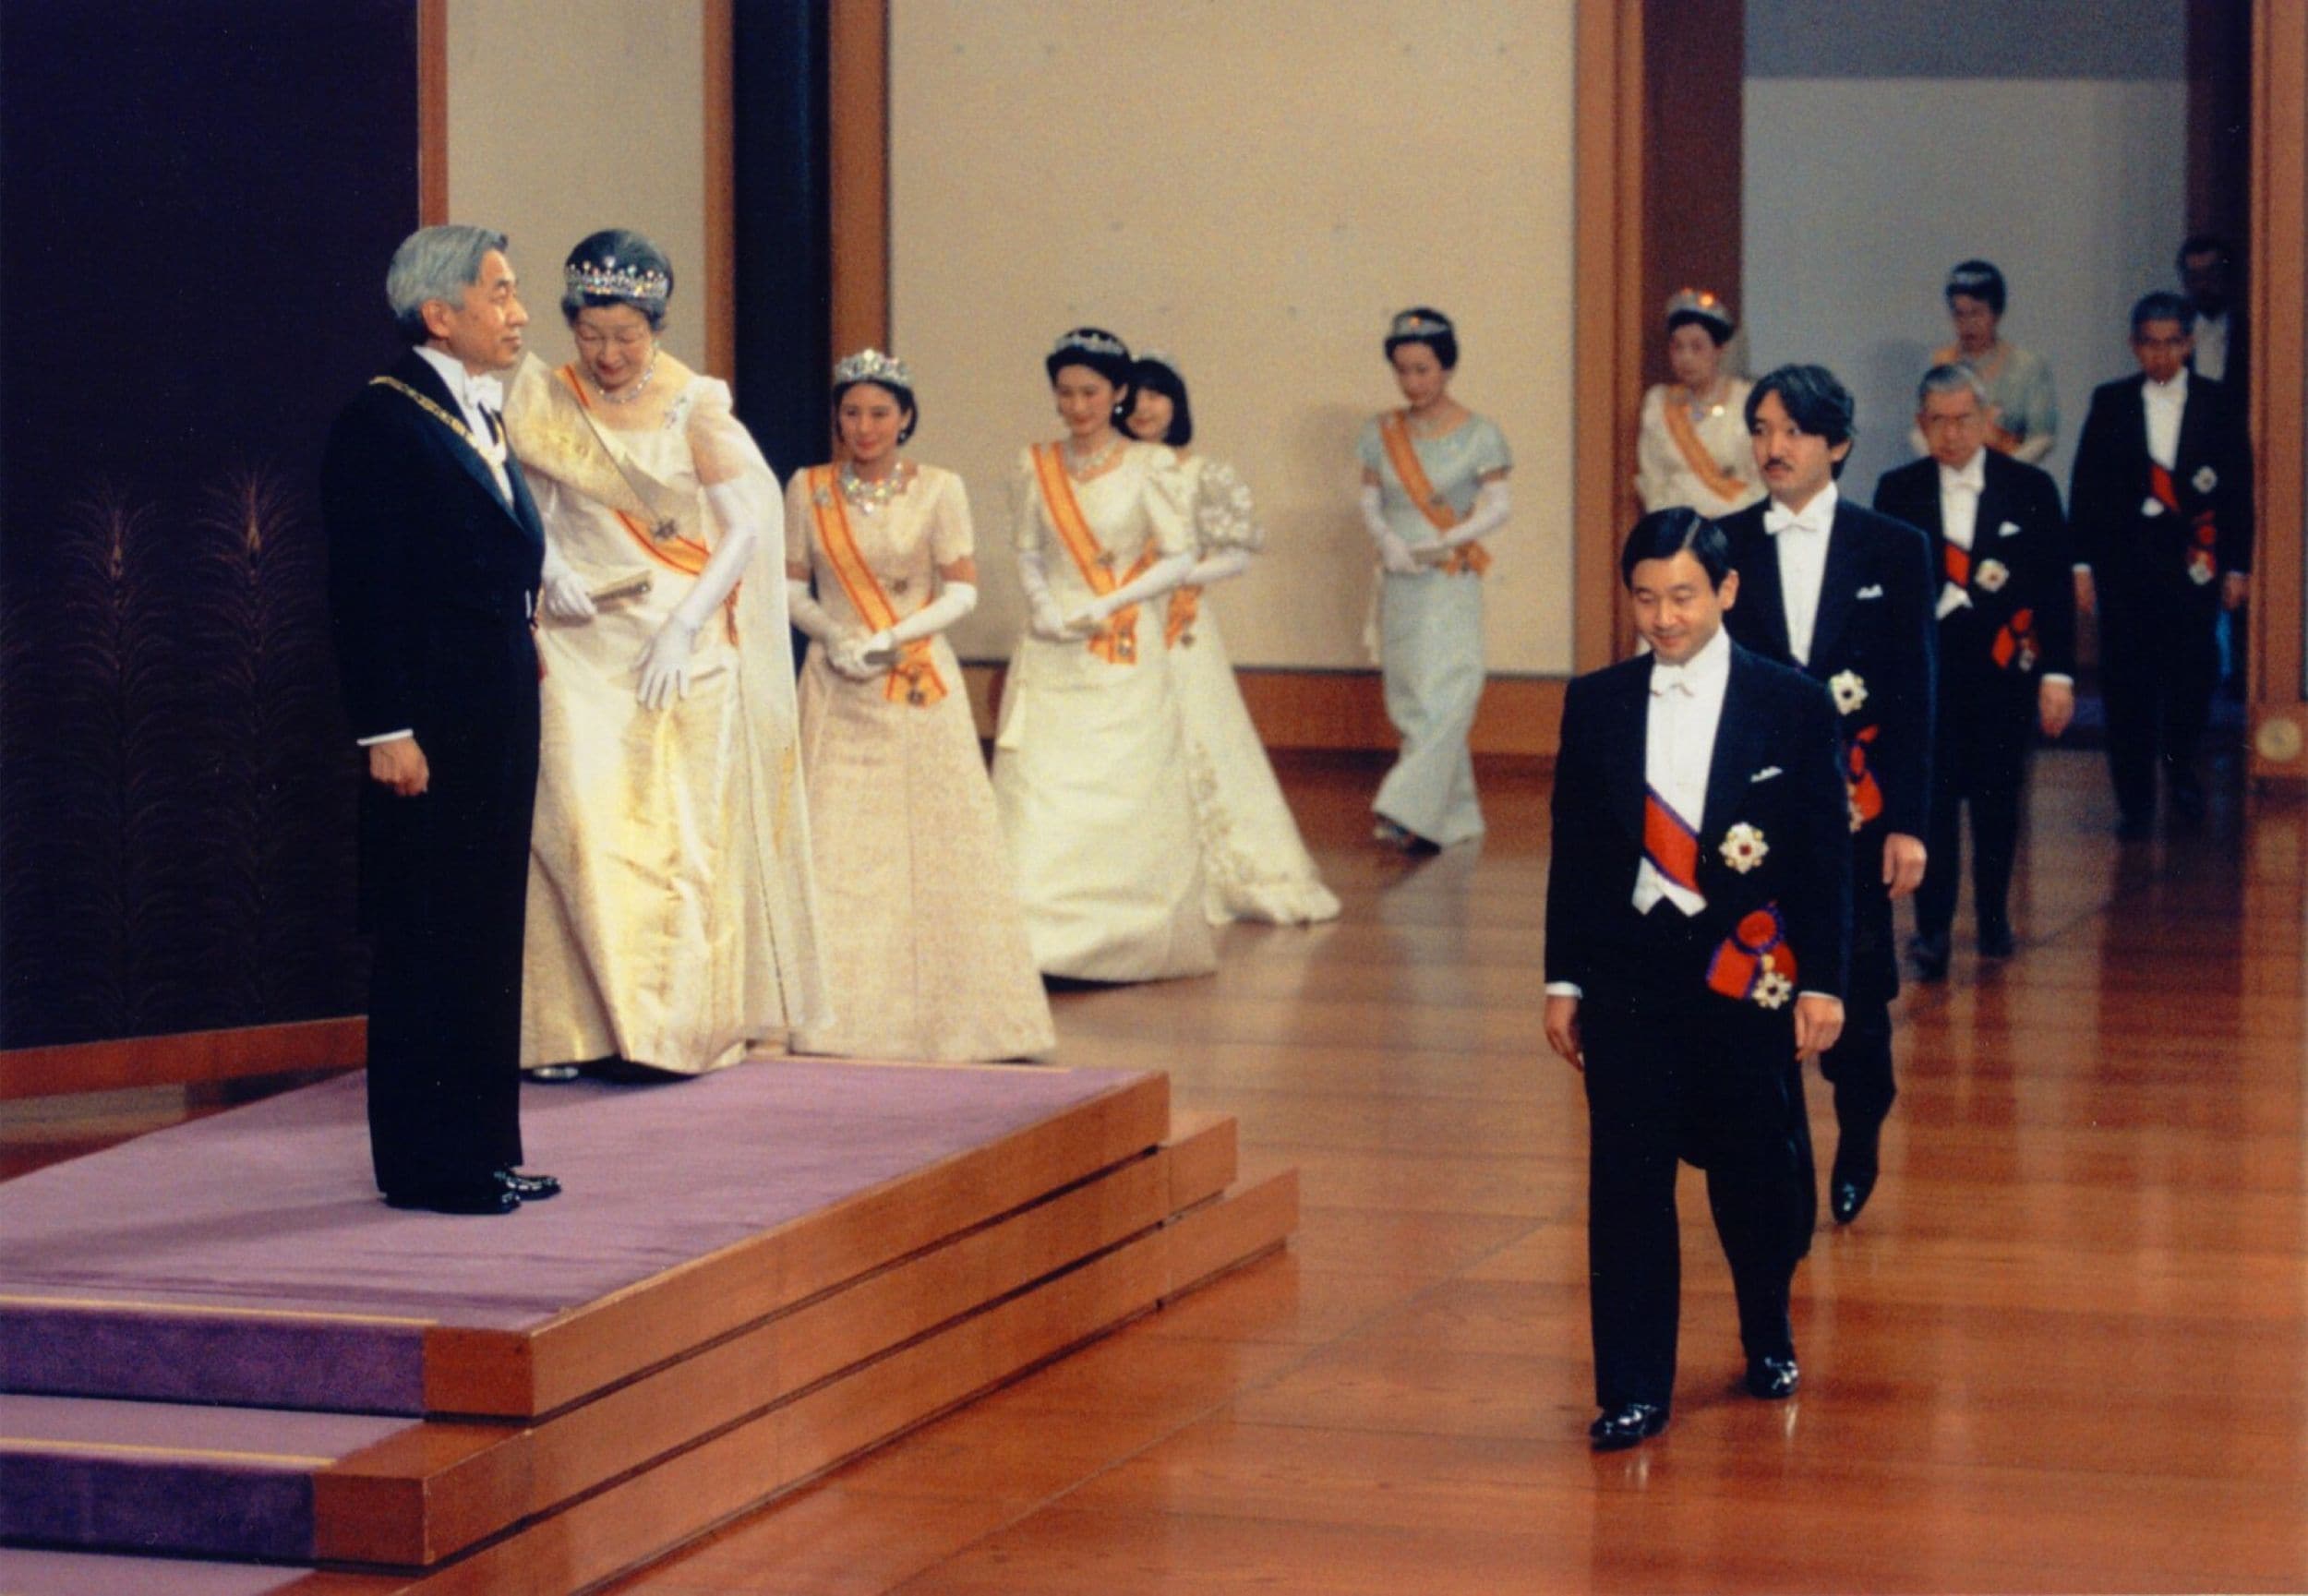 1997年1月1日、皇居・松の間で新年祝賀の儀に臨まれる天皇皇后両陛下（当時）と皇族方。雅子さまのティアラが輝いている。スカラップカット風のドレスは若々しい印象